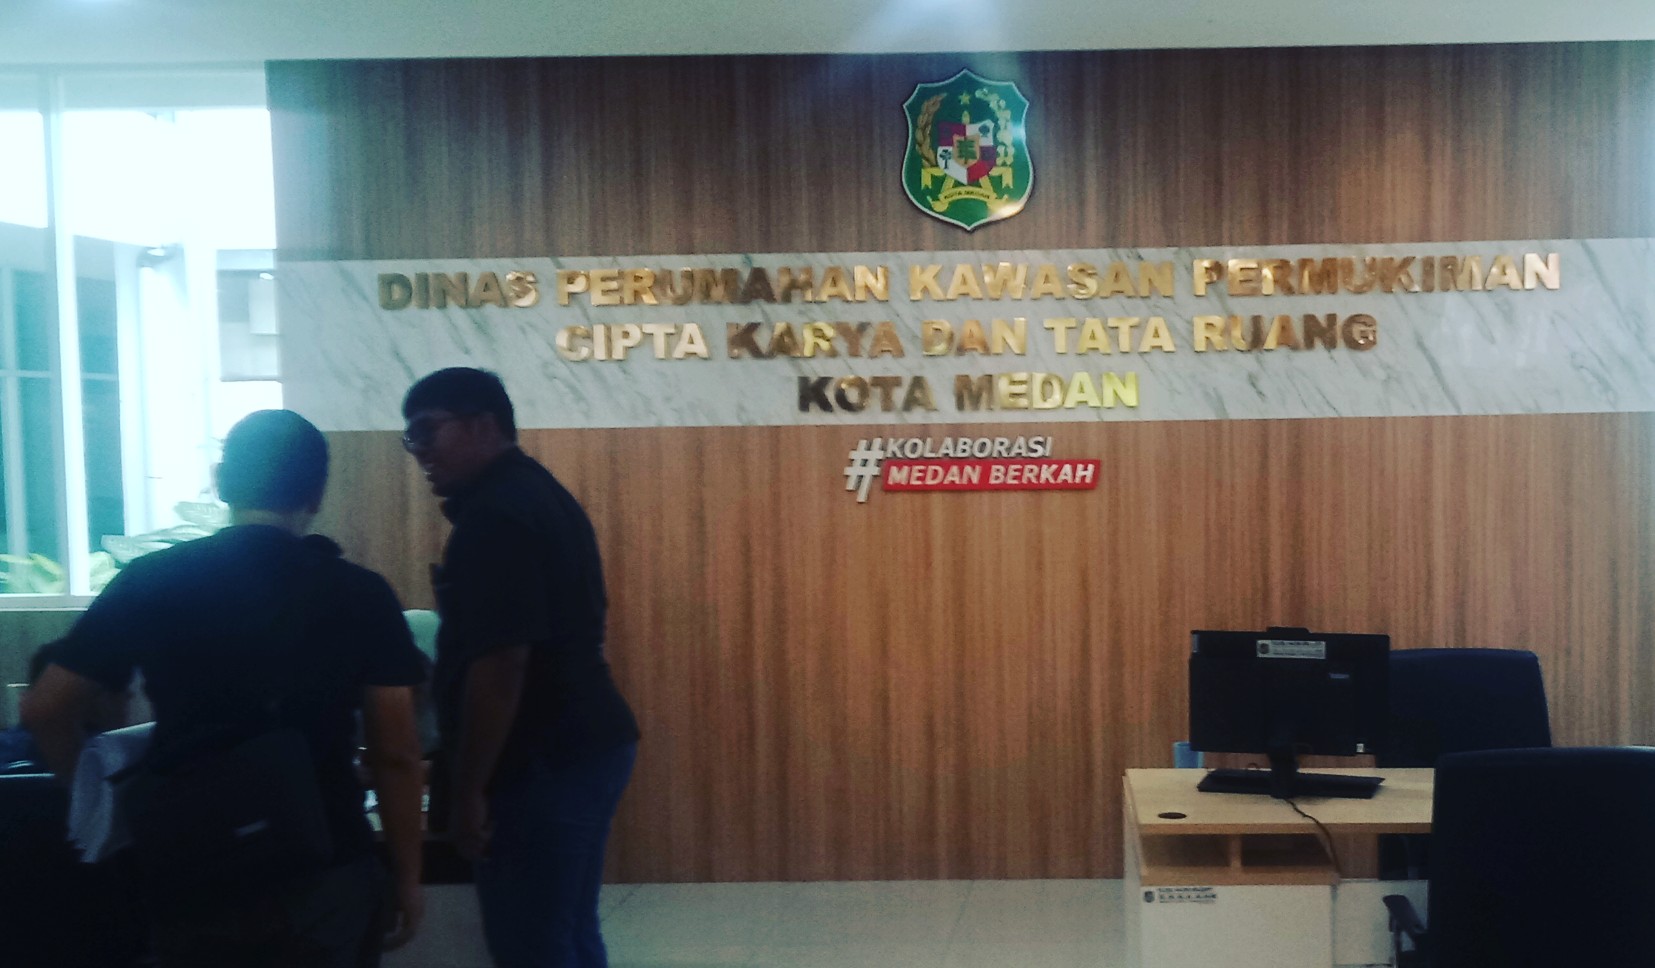 Terkait "Hilangnya" Aset, Sibuk Perjalanan Dinas, Surat Dinas SDABMBK Di Duga Mangkrak Di PKPCKTR Kota Medan